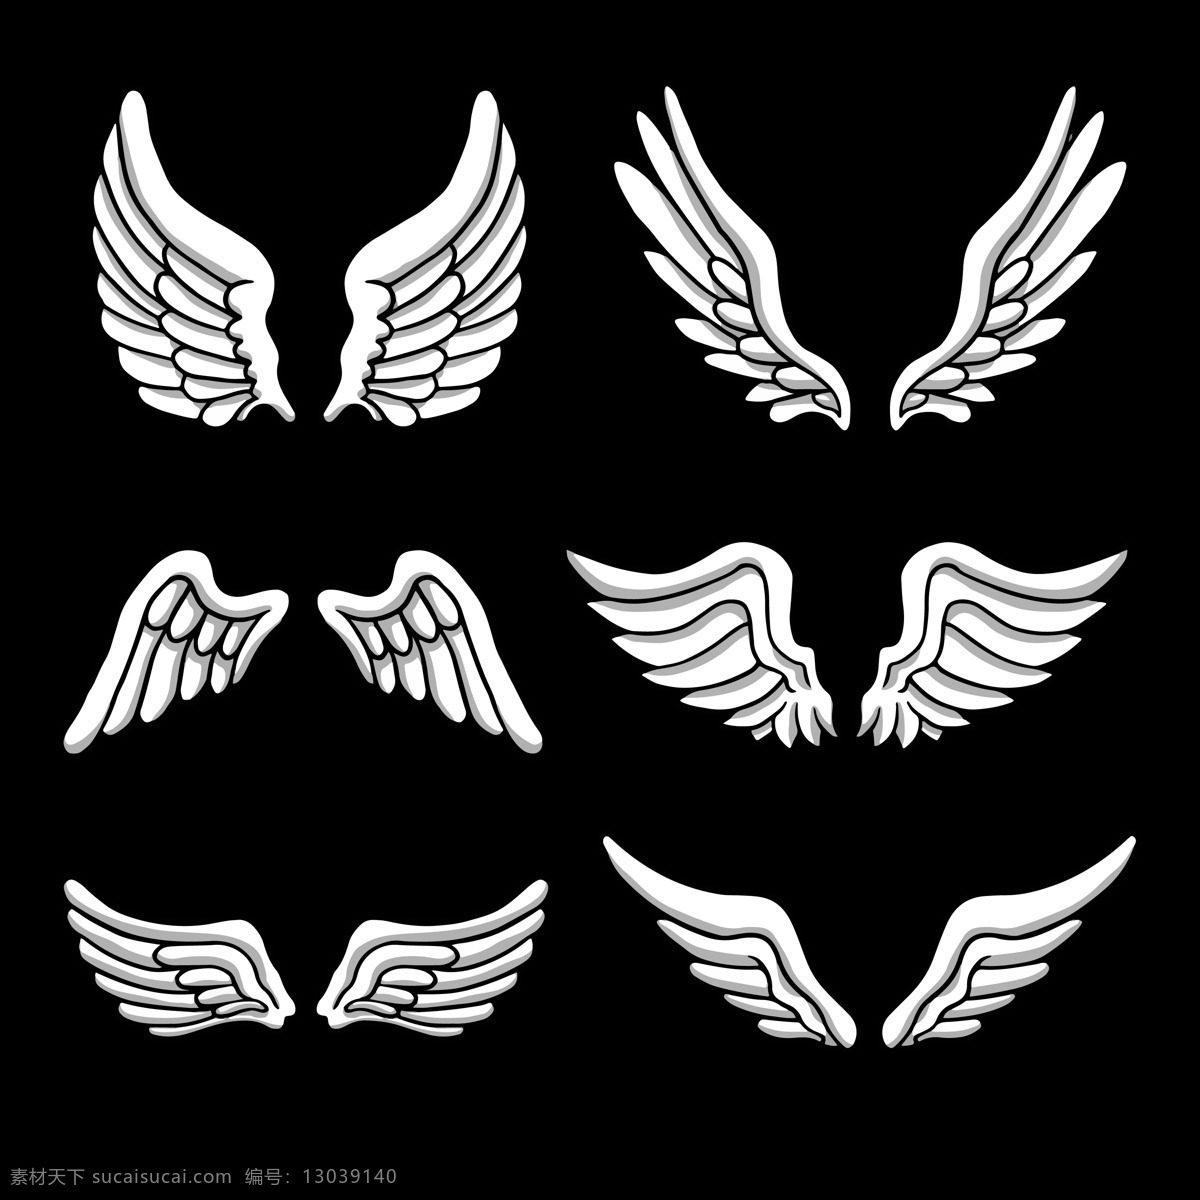 简约 素描 风格 翅膀 免 抠 透明 图 层 手绘翅膀 翅膀元素 小 天使 卡通翅膀 翅膀图片素材 纹身图案 翅膀素材 手绘翅膀图片